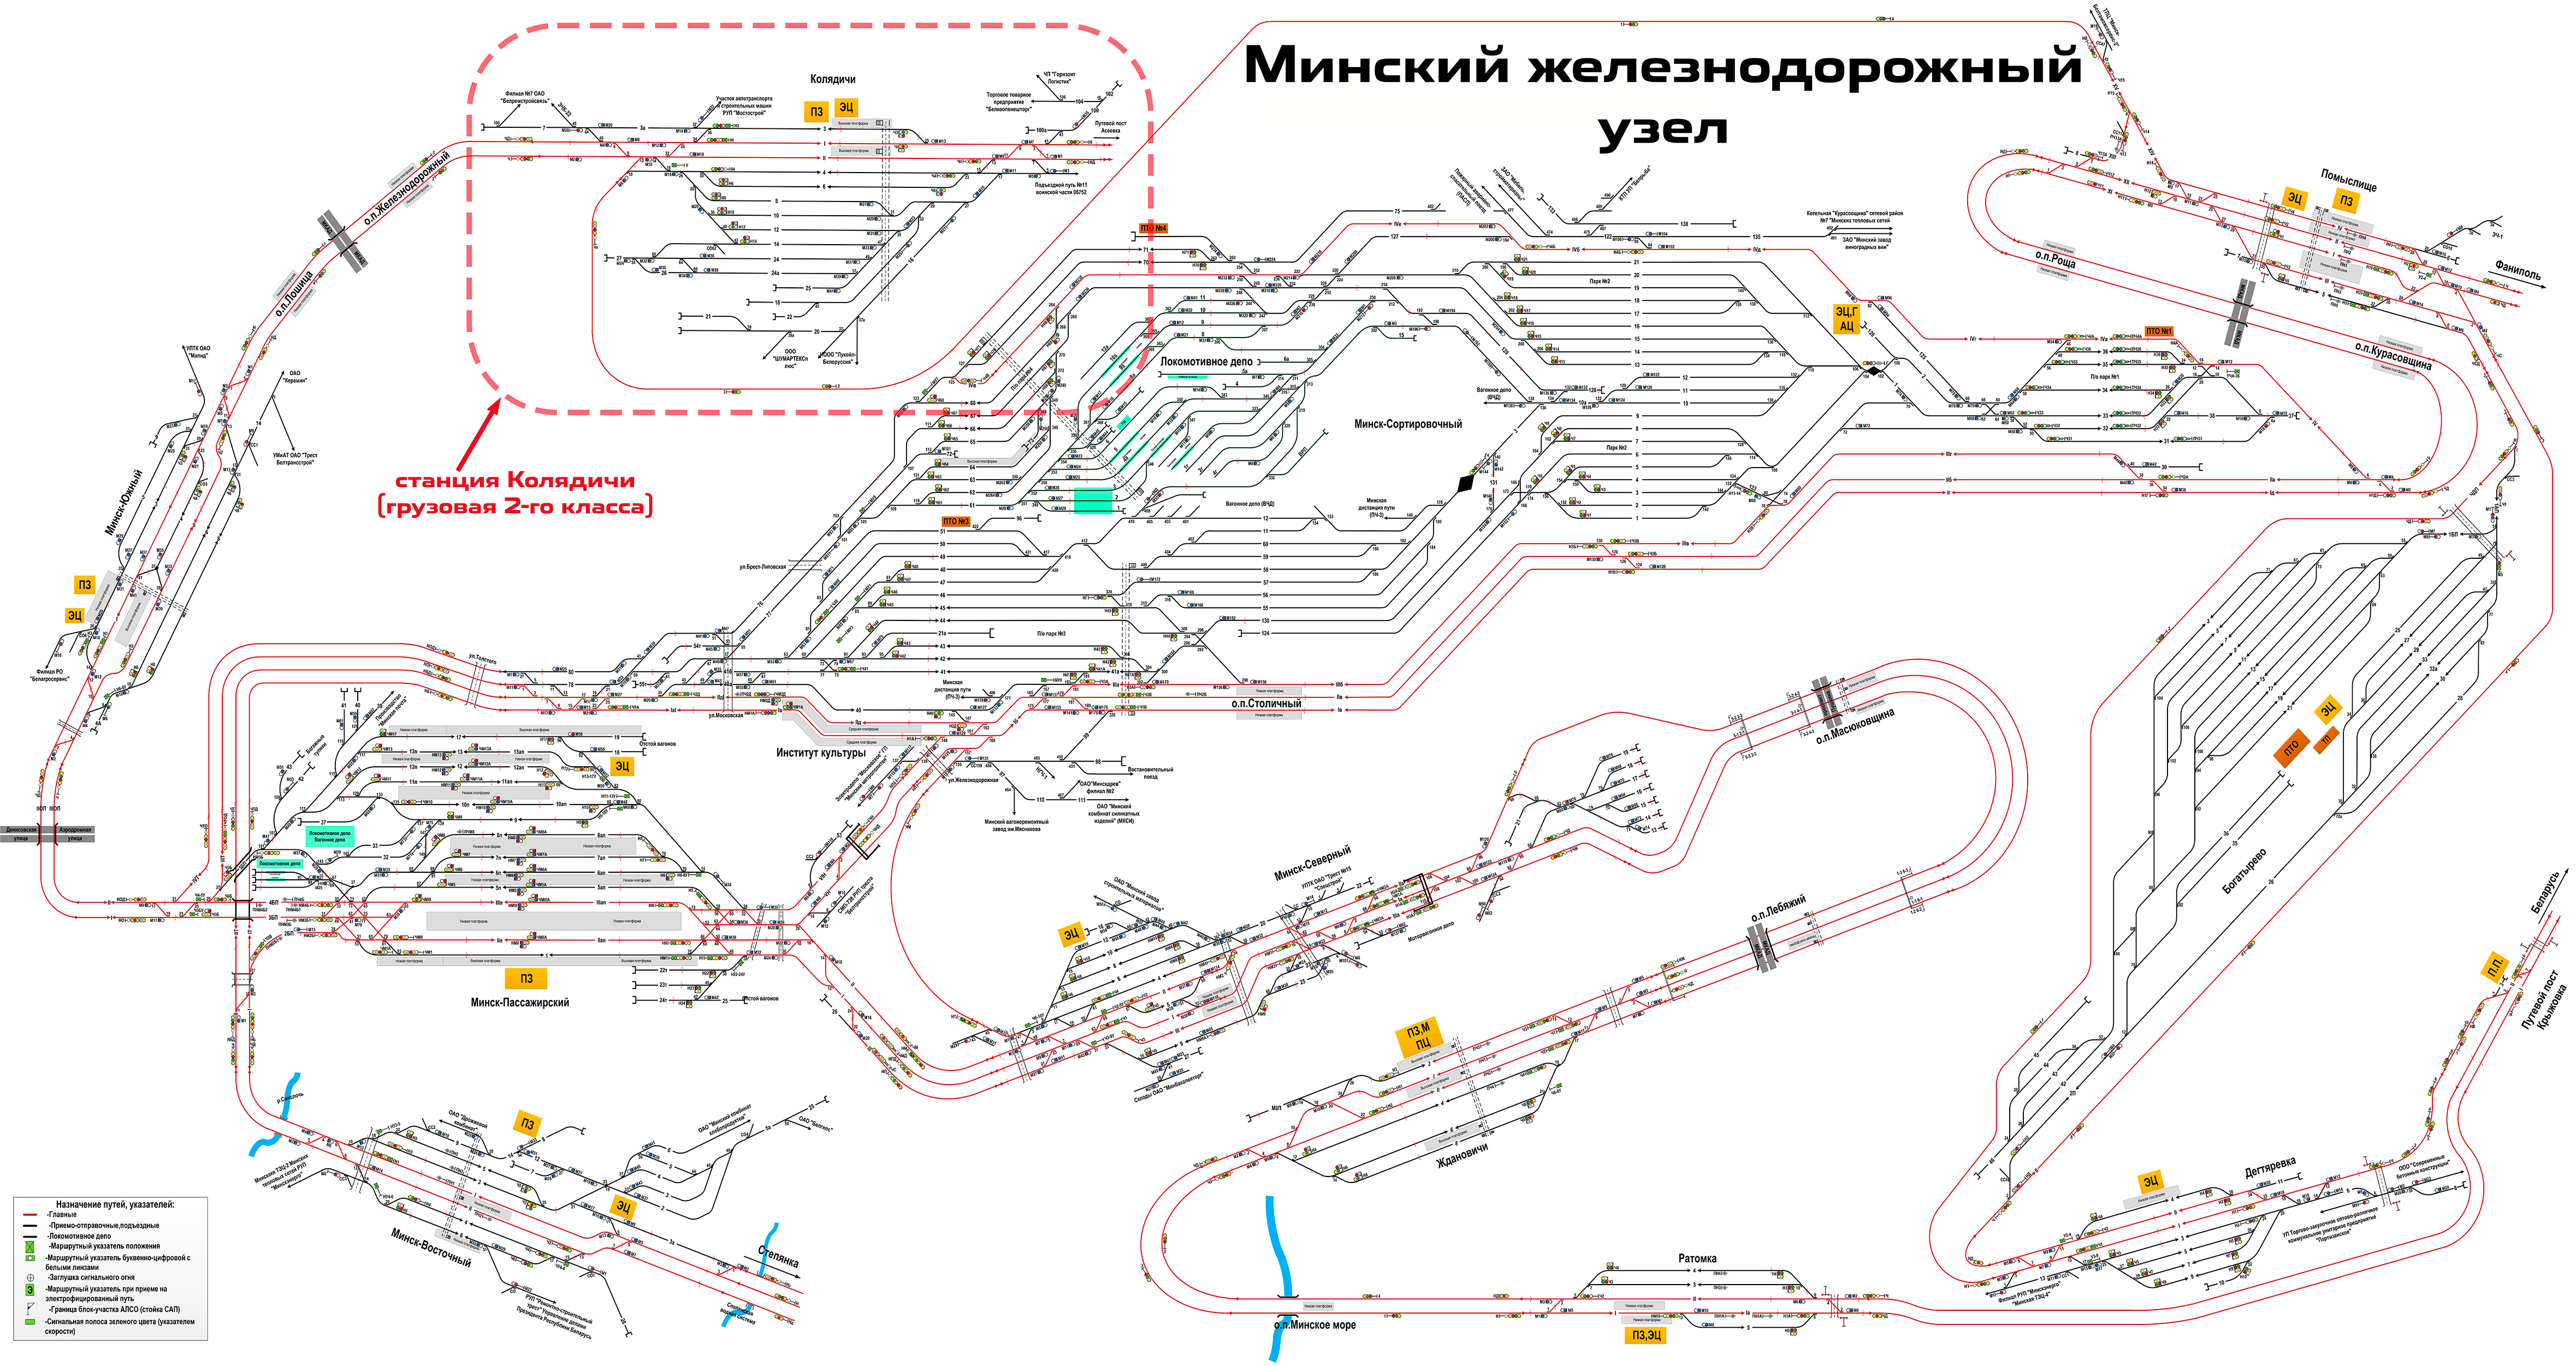 Схема железнодорожного узла Минск (Белорусской железной дороги)